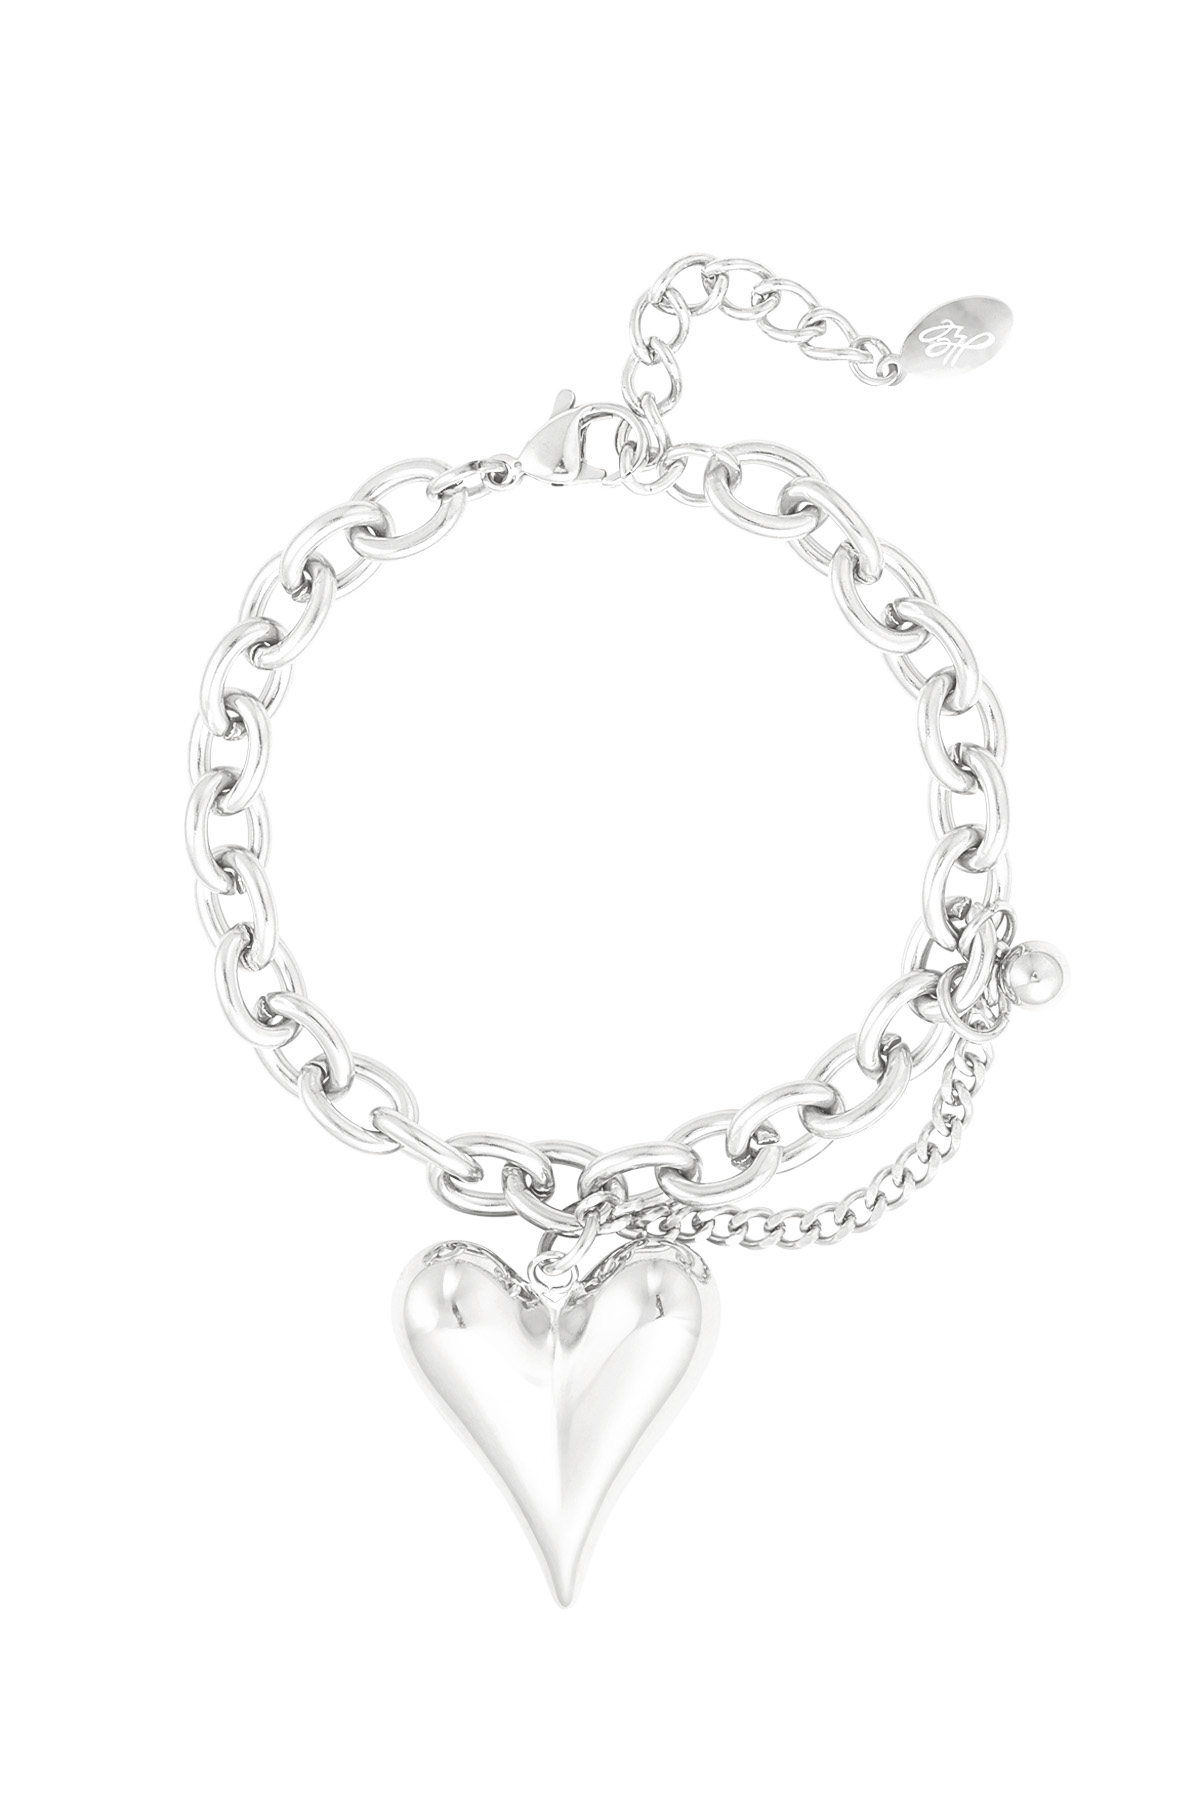 Bracelet love life - silver